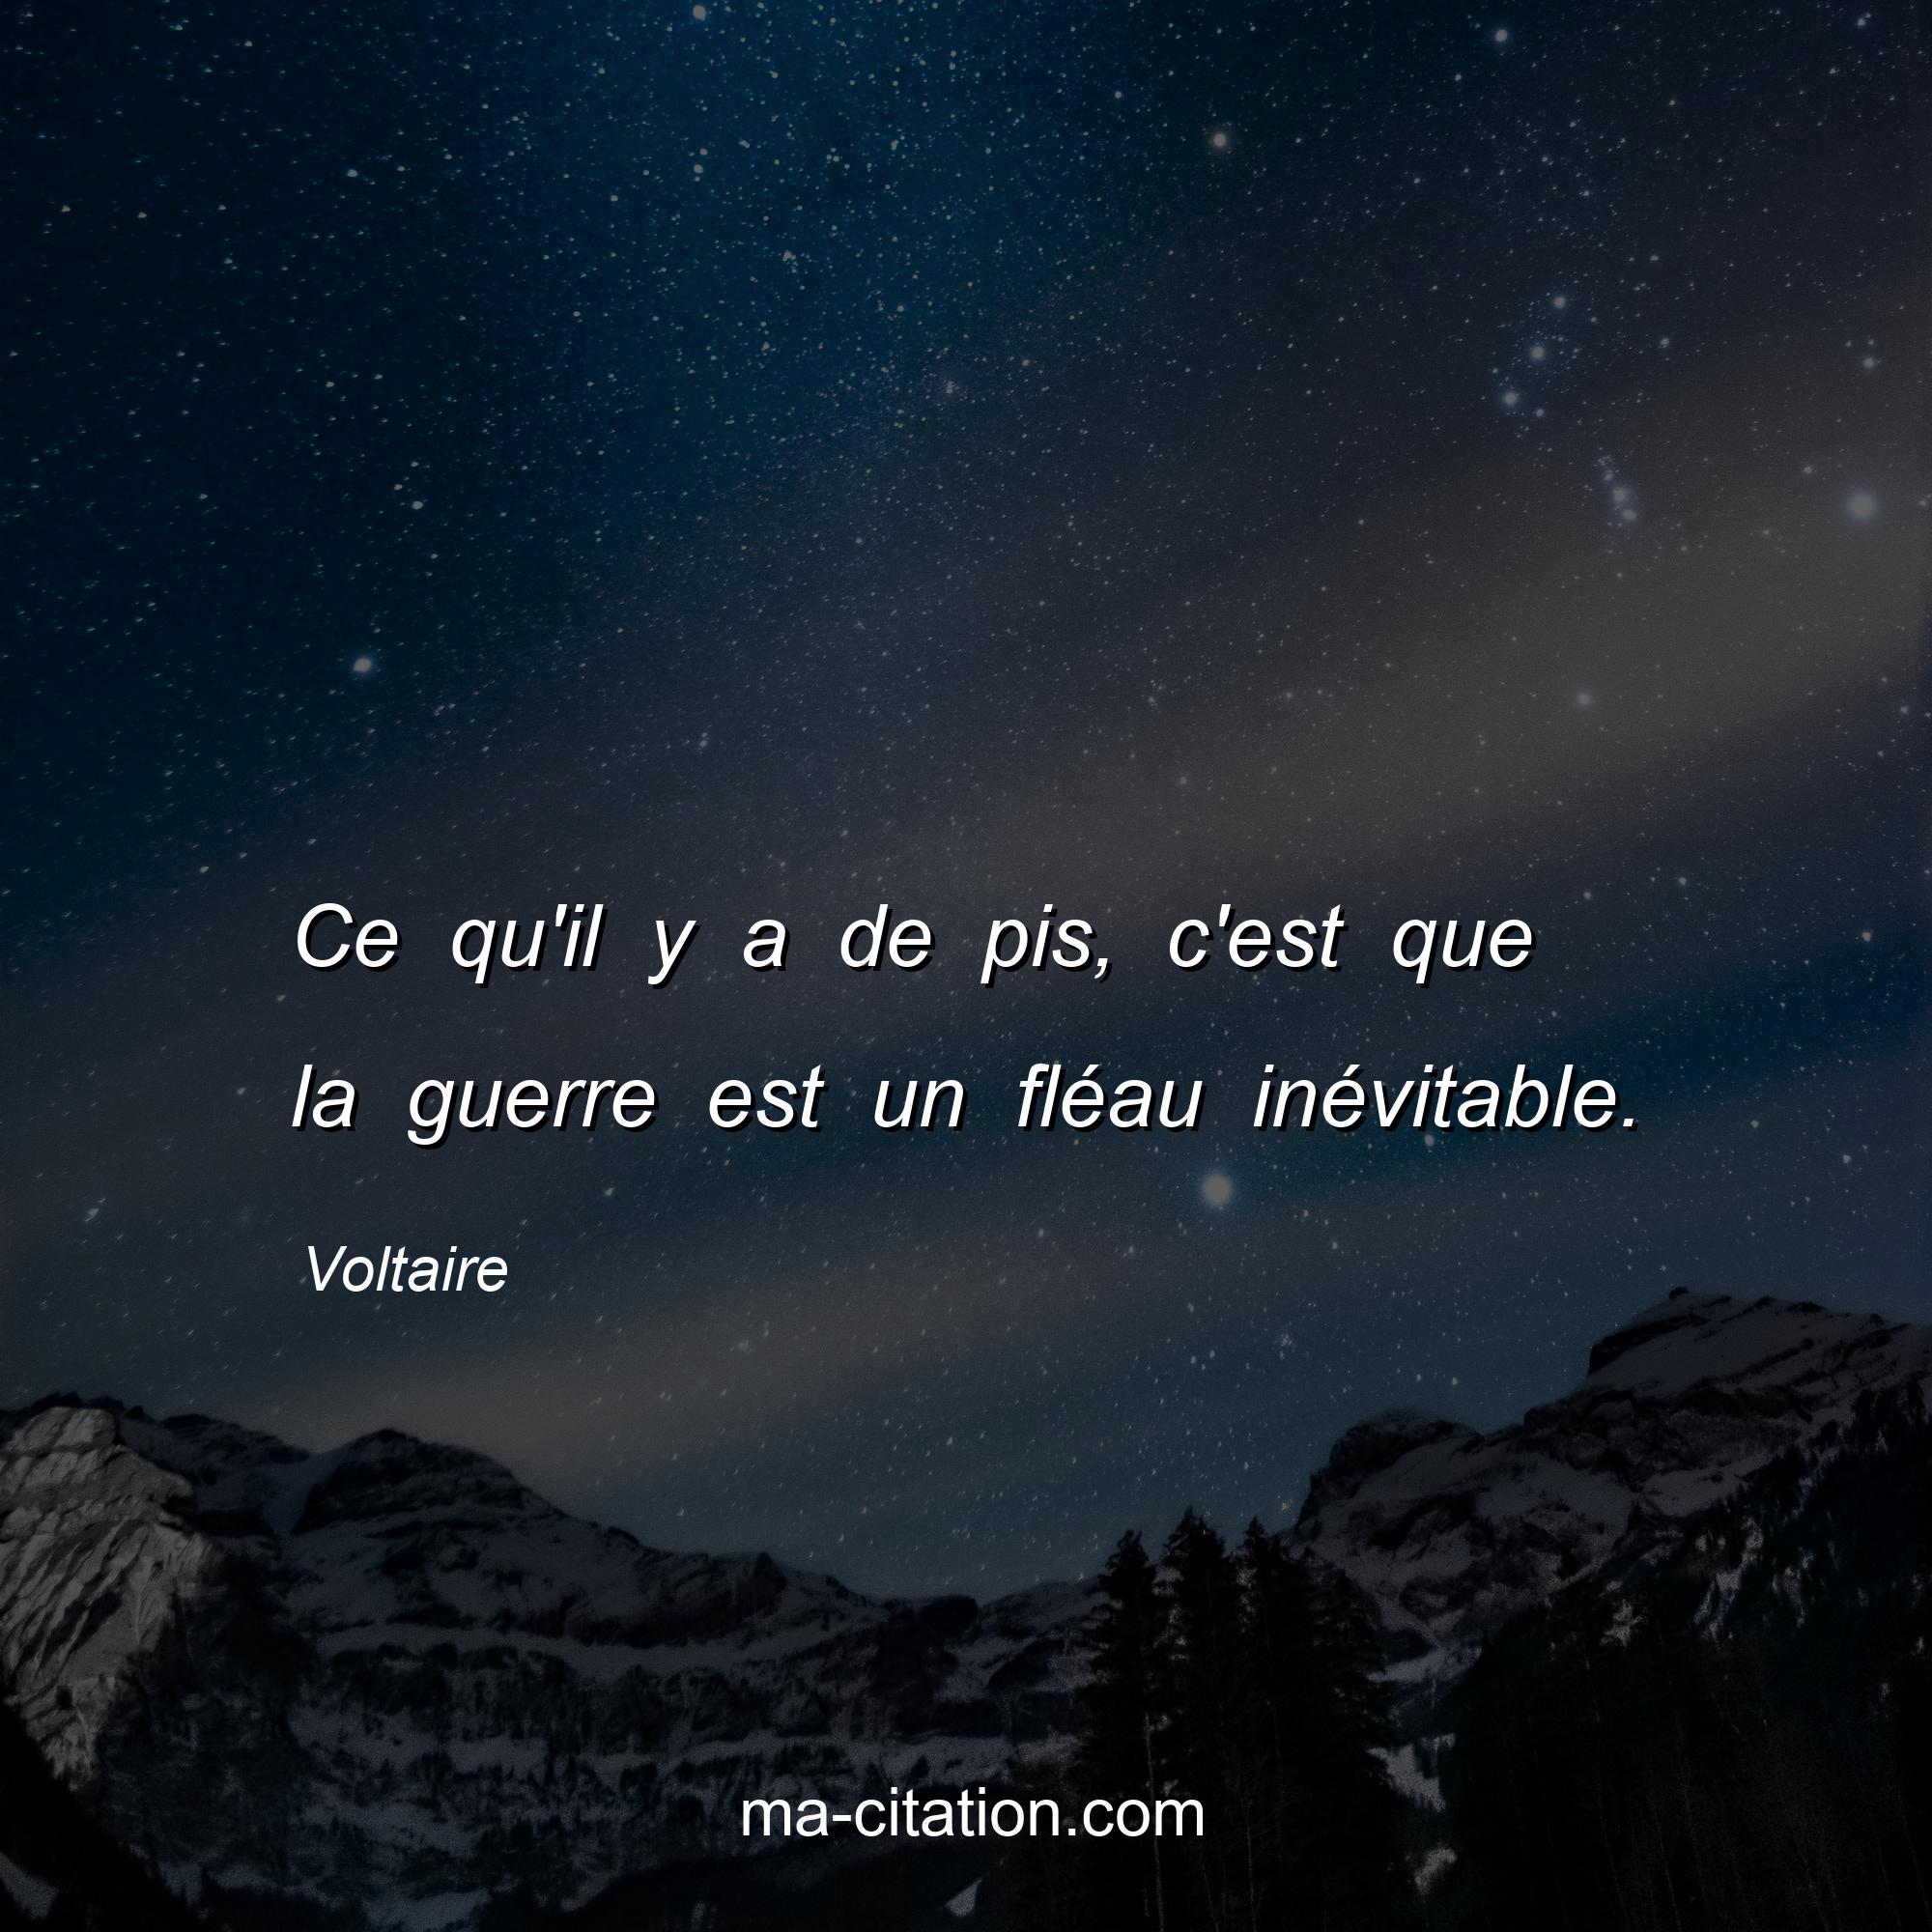 Voltaire : Ce qu'il y a de pis, c'est que la guerre est un fléau inévitable.